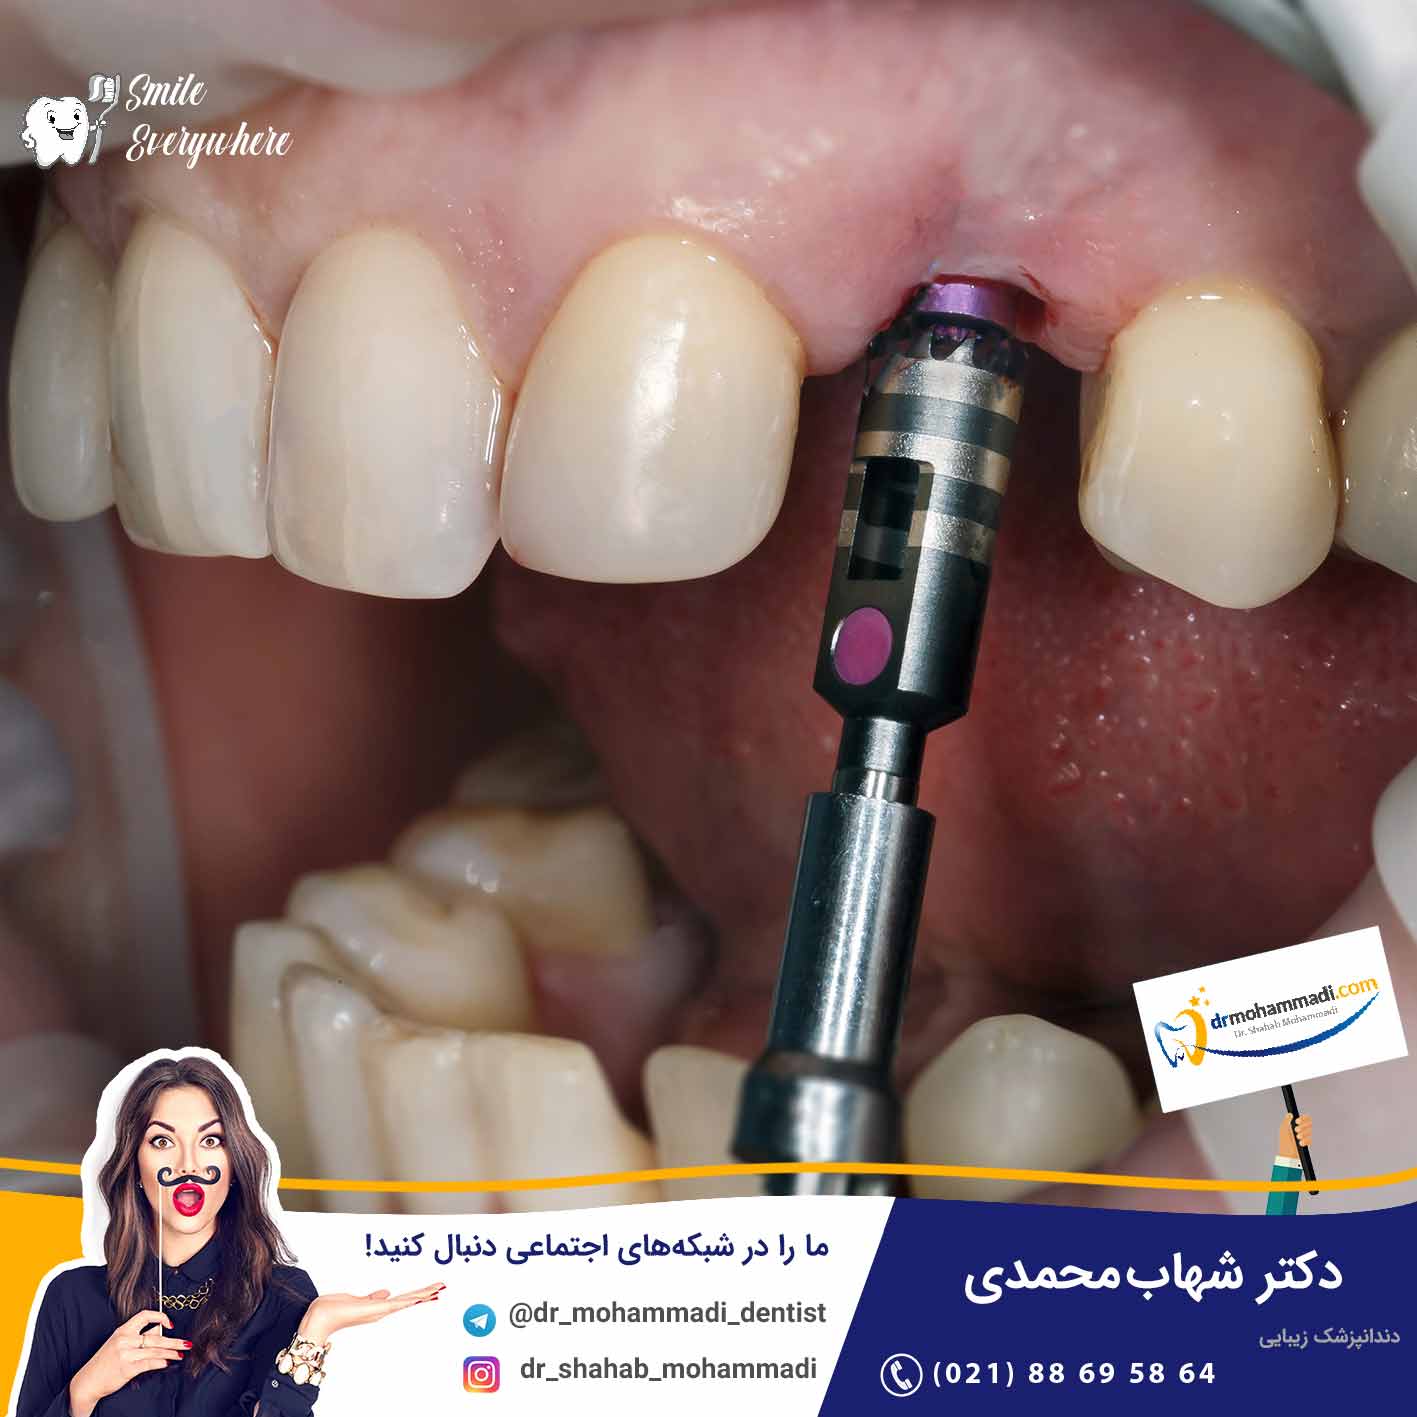 ایمپلنت بیماران دیابتی چگونه است آیا خطرناک است؟ - کلینیک دندانپزشکی دکتر شهاب محمدی